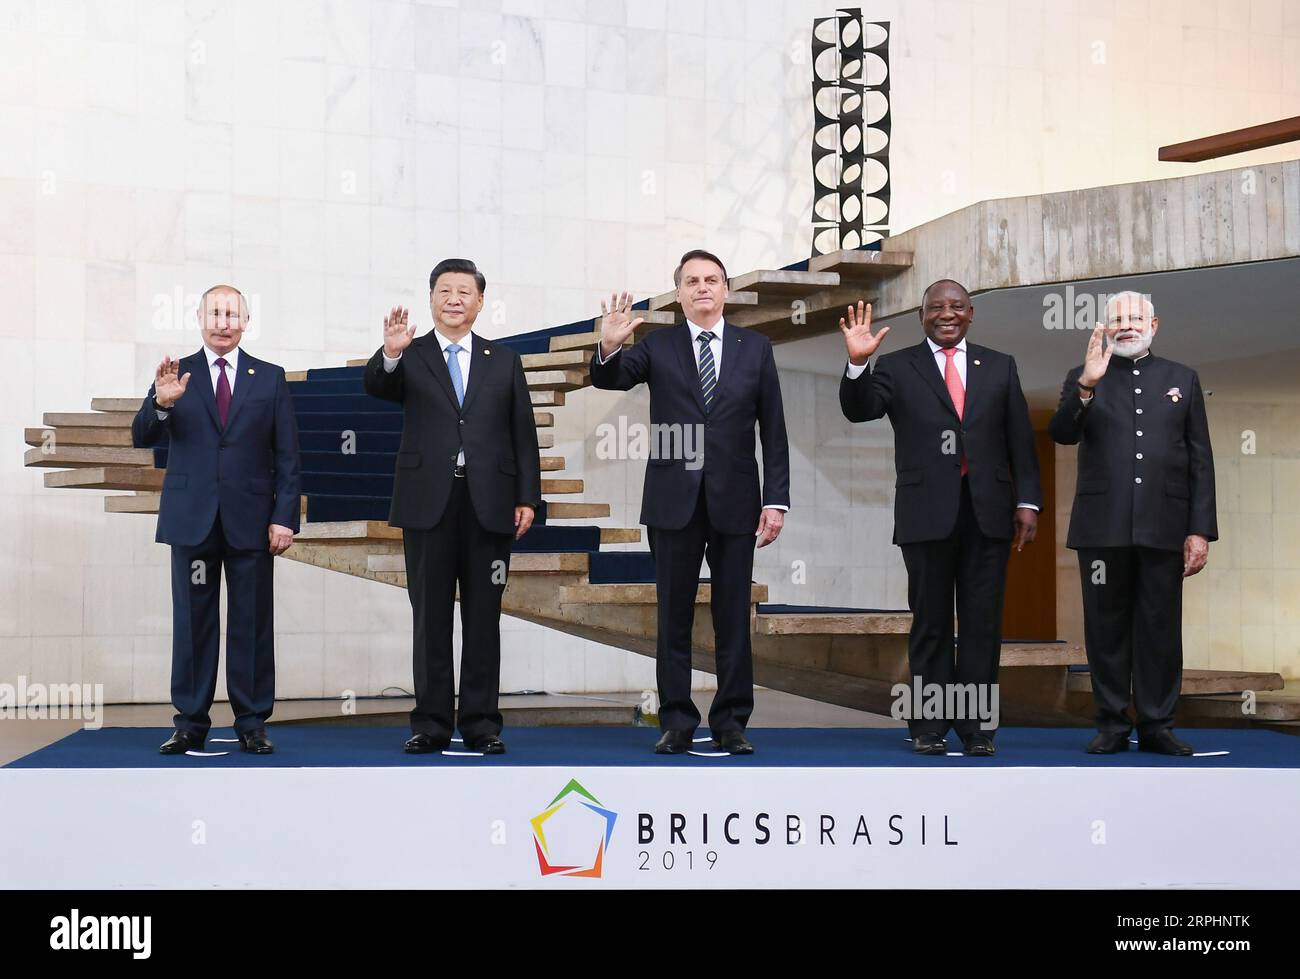 191114 -- BRASILIA, 14 novembre 2019 -- i leader dei BRICS posano per una foto di gruppo all'undicesimo vertice dei BRICS a Brasilia, Brasile, 14 novembre 2019. L'undicesimo vertice dei BRICS, un blocco dei mercati emergenti che raggruppa Brasile, Russia, India, Cina e Sud Africa, si è tenuto giovedì a Brasilia. Il presidente brasiliano Jair Bolsonaro ha presieduto il vertice. Hanno partecipato al vertice anche il presidente cinese Xi Jinping, il presidente russo Vladimir Putin, il primo ministro indiano Narendra modi e il presidente sudafricano Cyril Ramaphosa. BRASILE-BRASILIA-CINA-XI JINPING-BRICS-SUMMIT XIEXHUANCHI PUBLICATIONXNOTXINXCHN Foto Stock